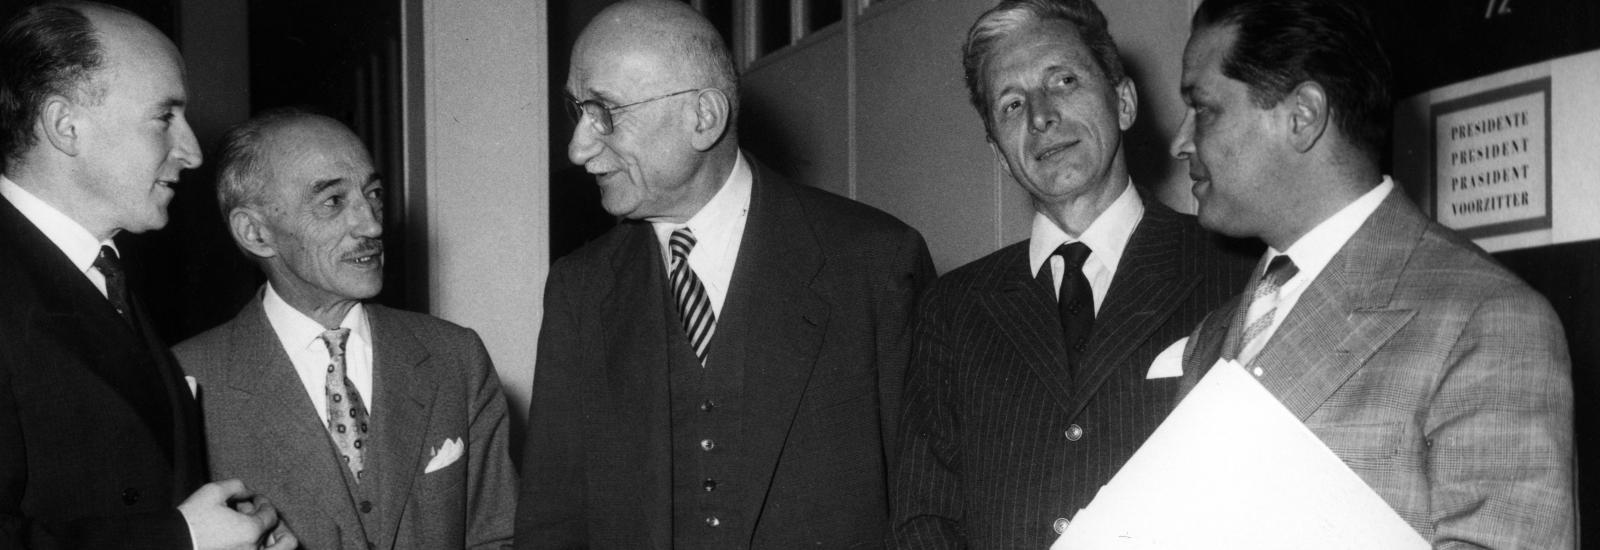  © Communauté européenne - Jean Monnet et Robert Schuman, deux des pères fondateurs de l’Europe. 